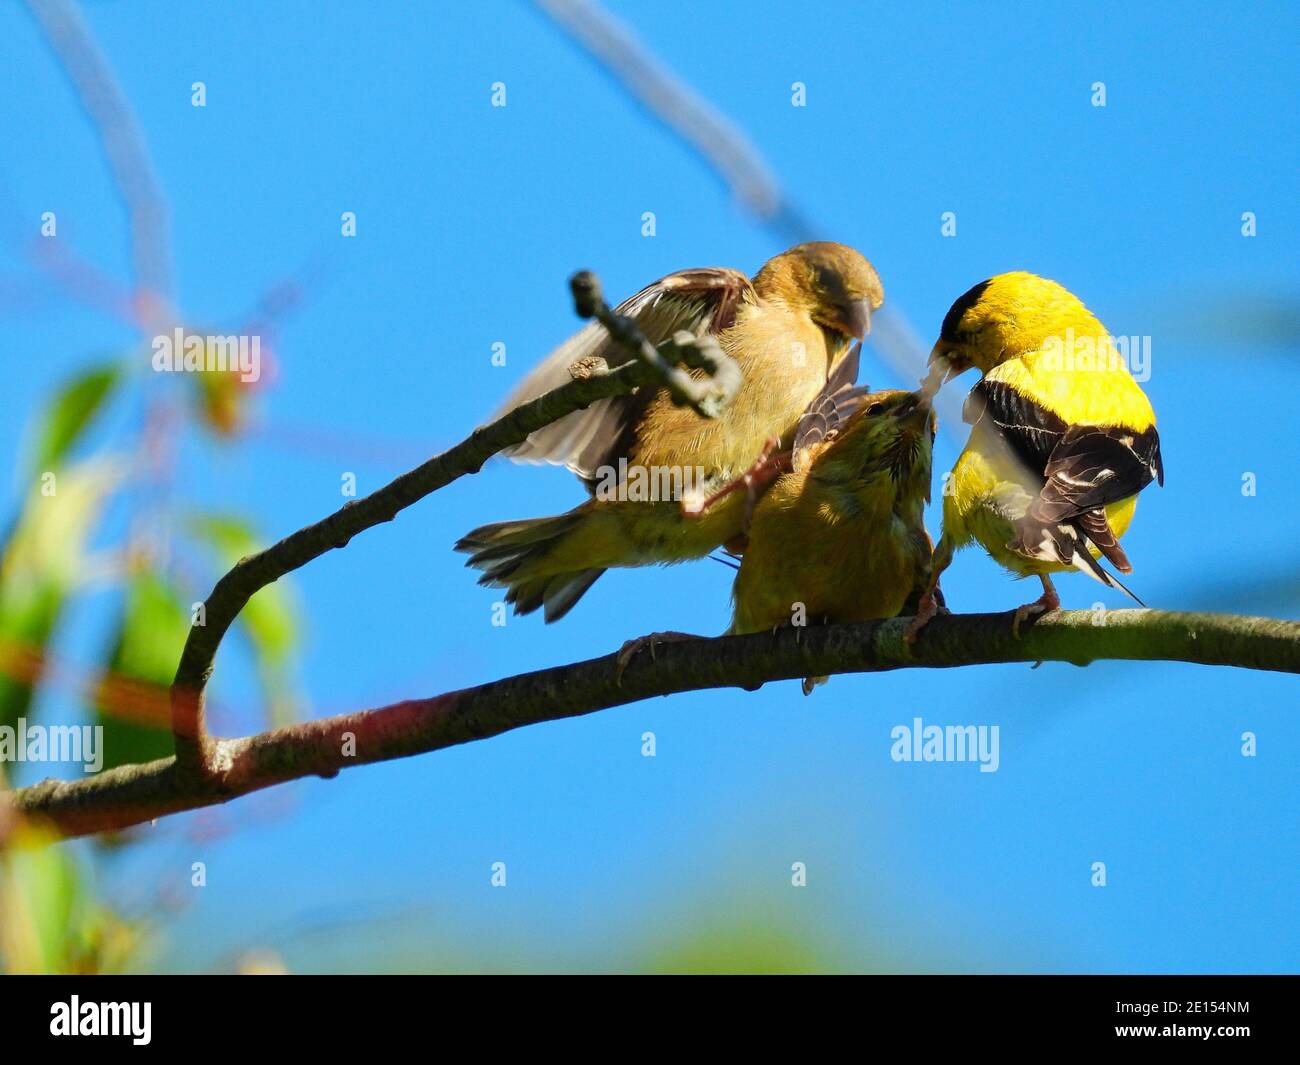 Goldfinch Bird Feeds Babies: Ein Vater amerikanischer Goldfinkenvogel füttert ein hungriges Finkenbaby, während der andere durch Springen und Fliegen um Nahrung kämpft Stockfoto